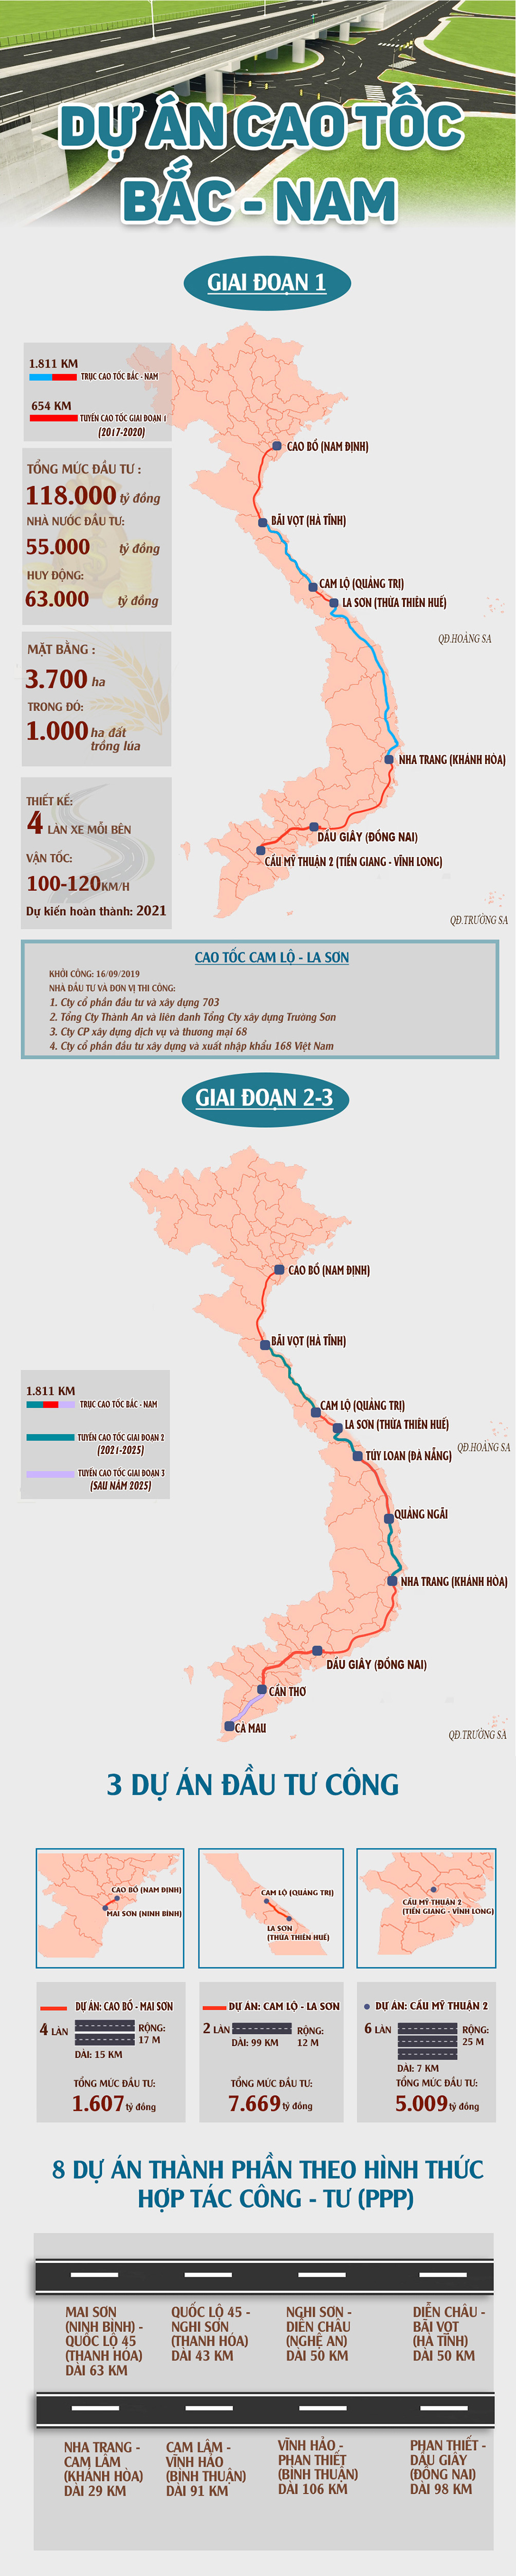 Infographic: Dự án cao tốc Bắc - Nam và những con số &#34;nghìn tỷ&#34; - 1